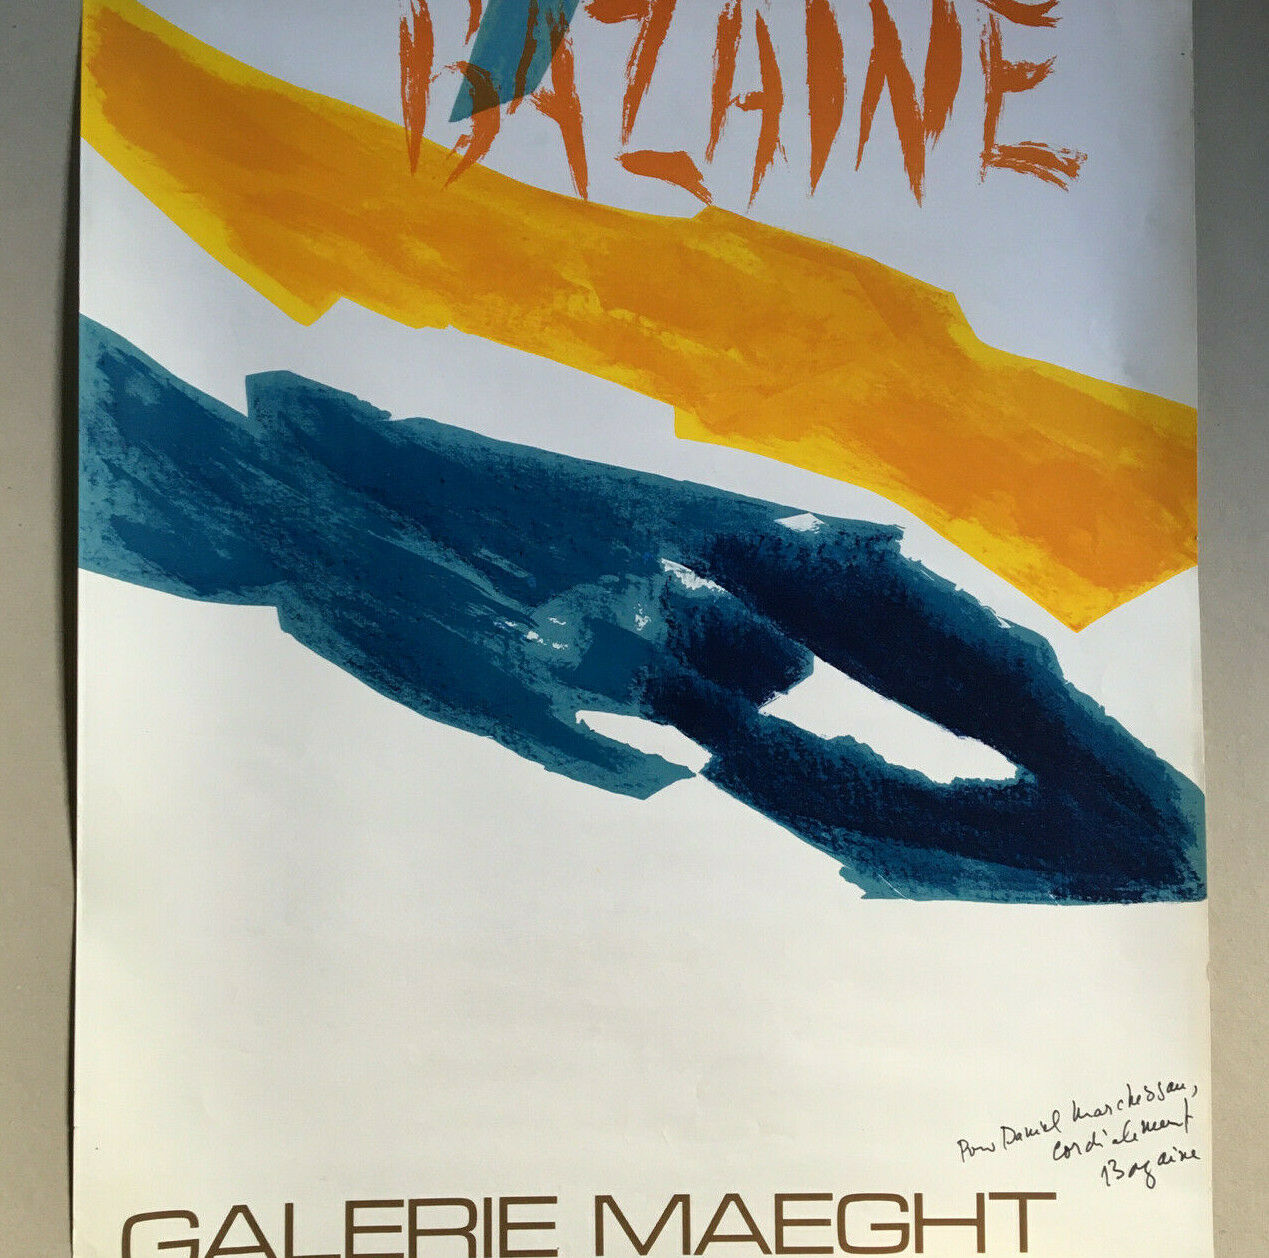 Bazaine — Affiche d'exposition signée — galerie Maeght — 53,5x74 cm — 1972.